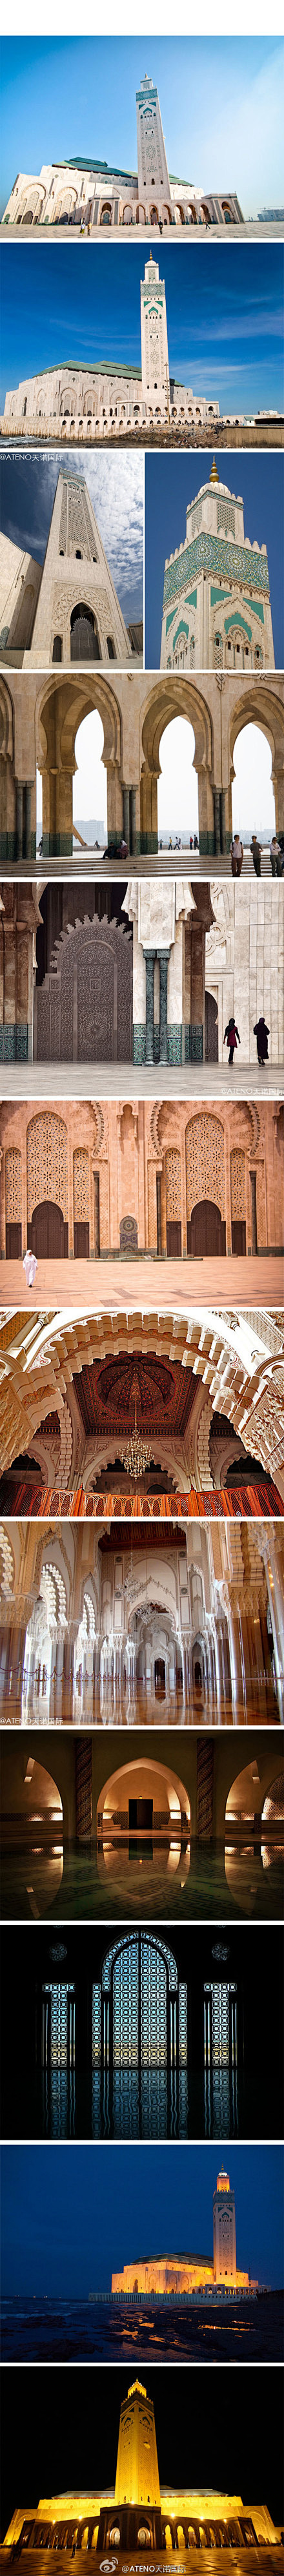 摩洛哥哈桑二世清真寺】位于摩洛哥王国的卡...